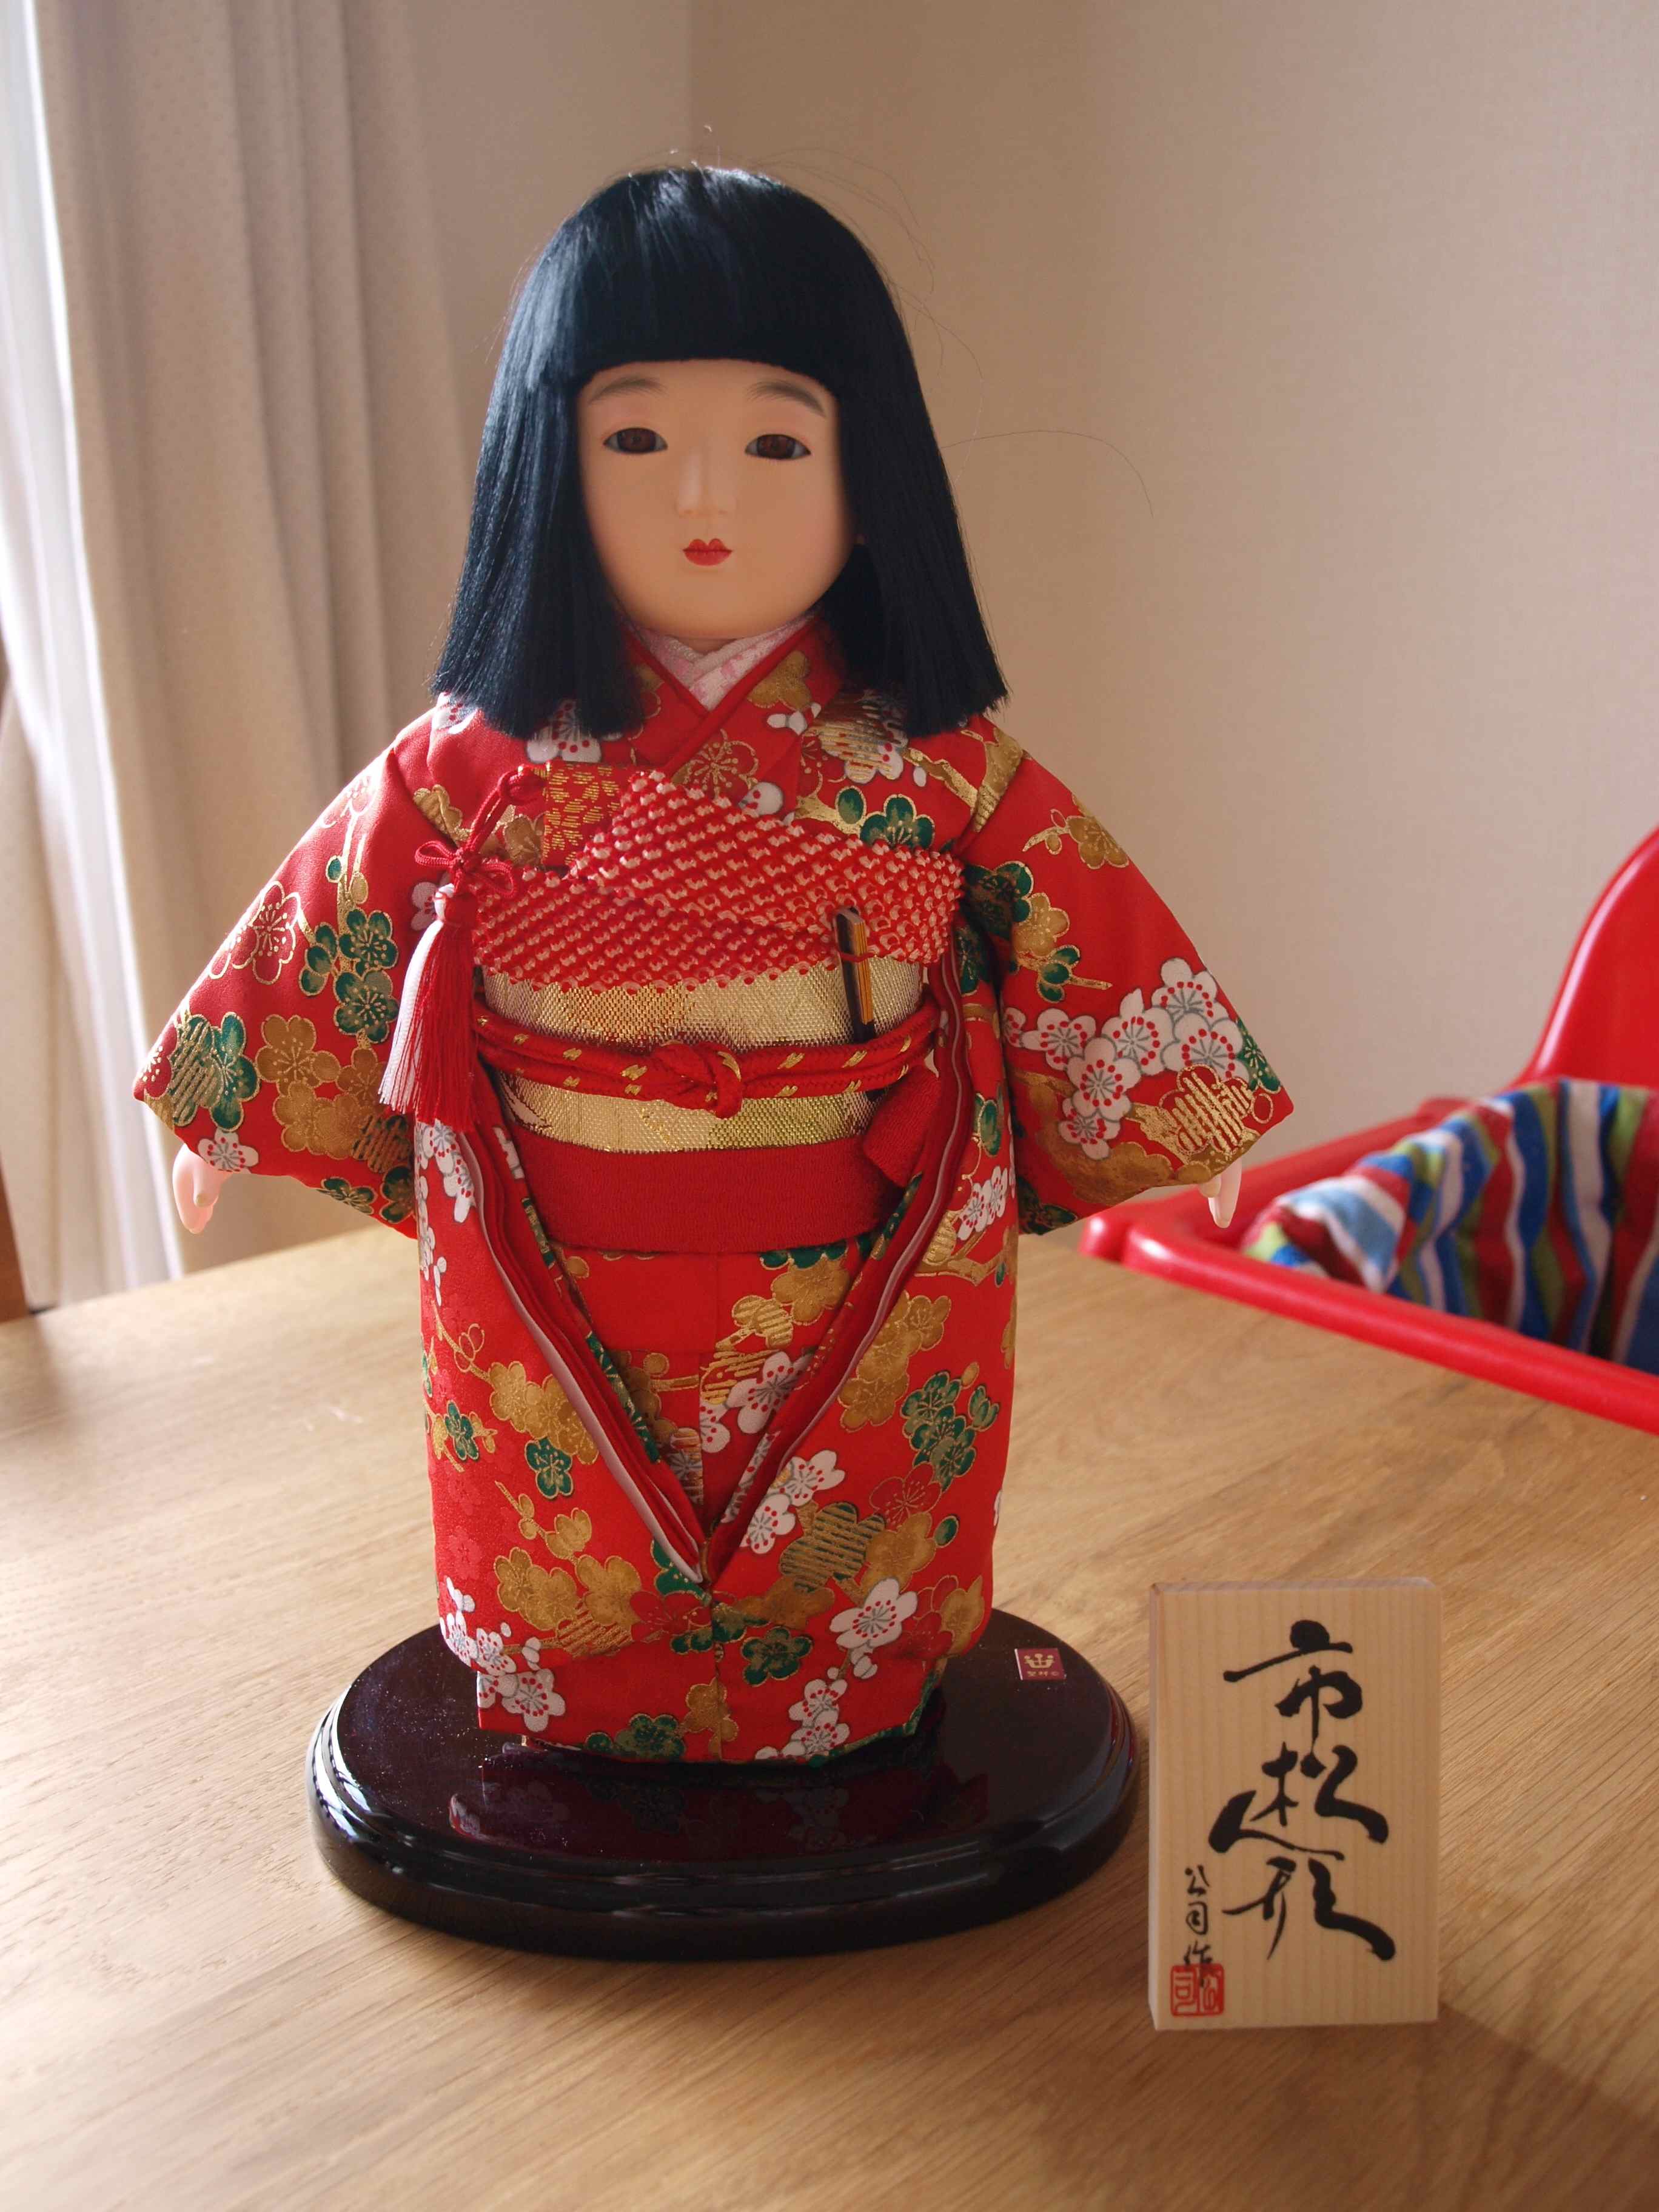 日本人形はなぜ怖い 恐怖の謎にせまる Renote リノート